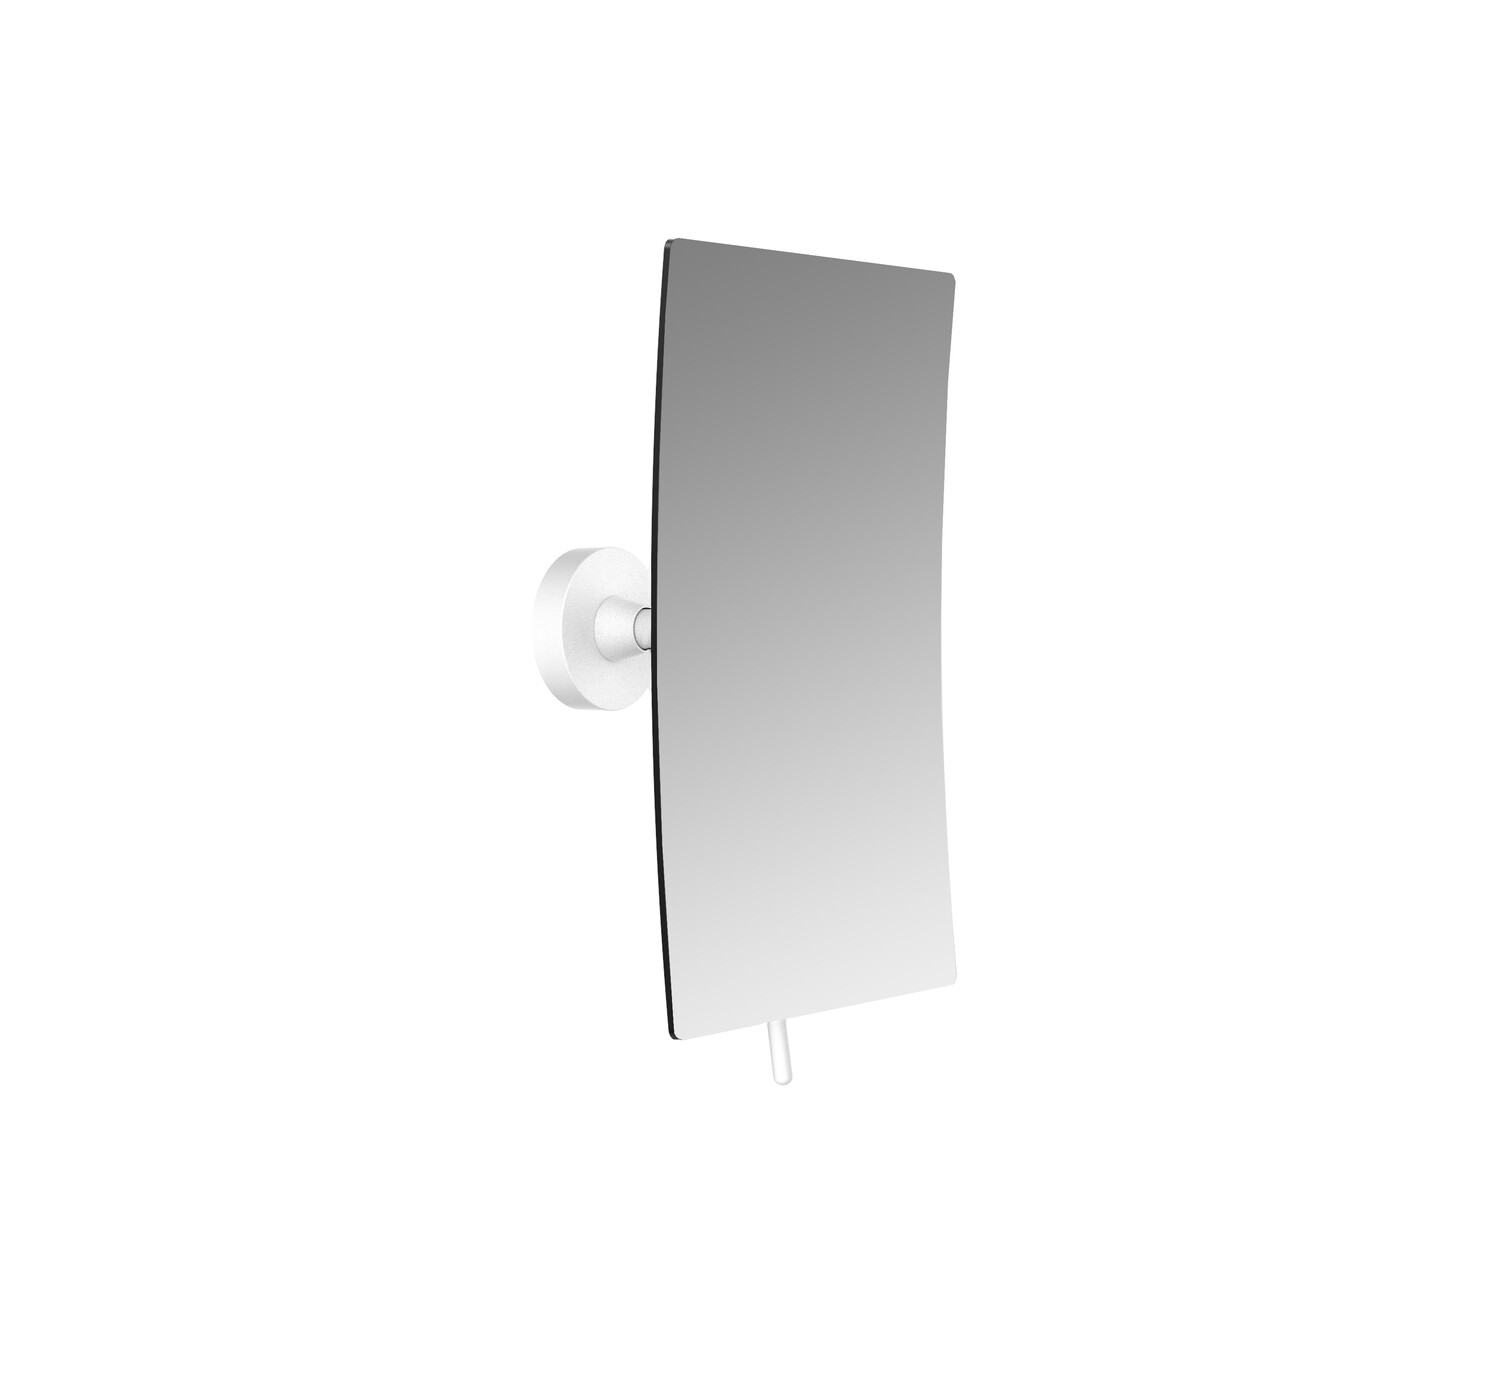 Kosmetikspiegel round mit glue system, 3-fach, eckig, 132x208 mm, weiss